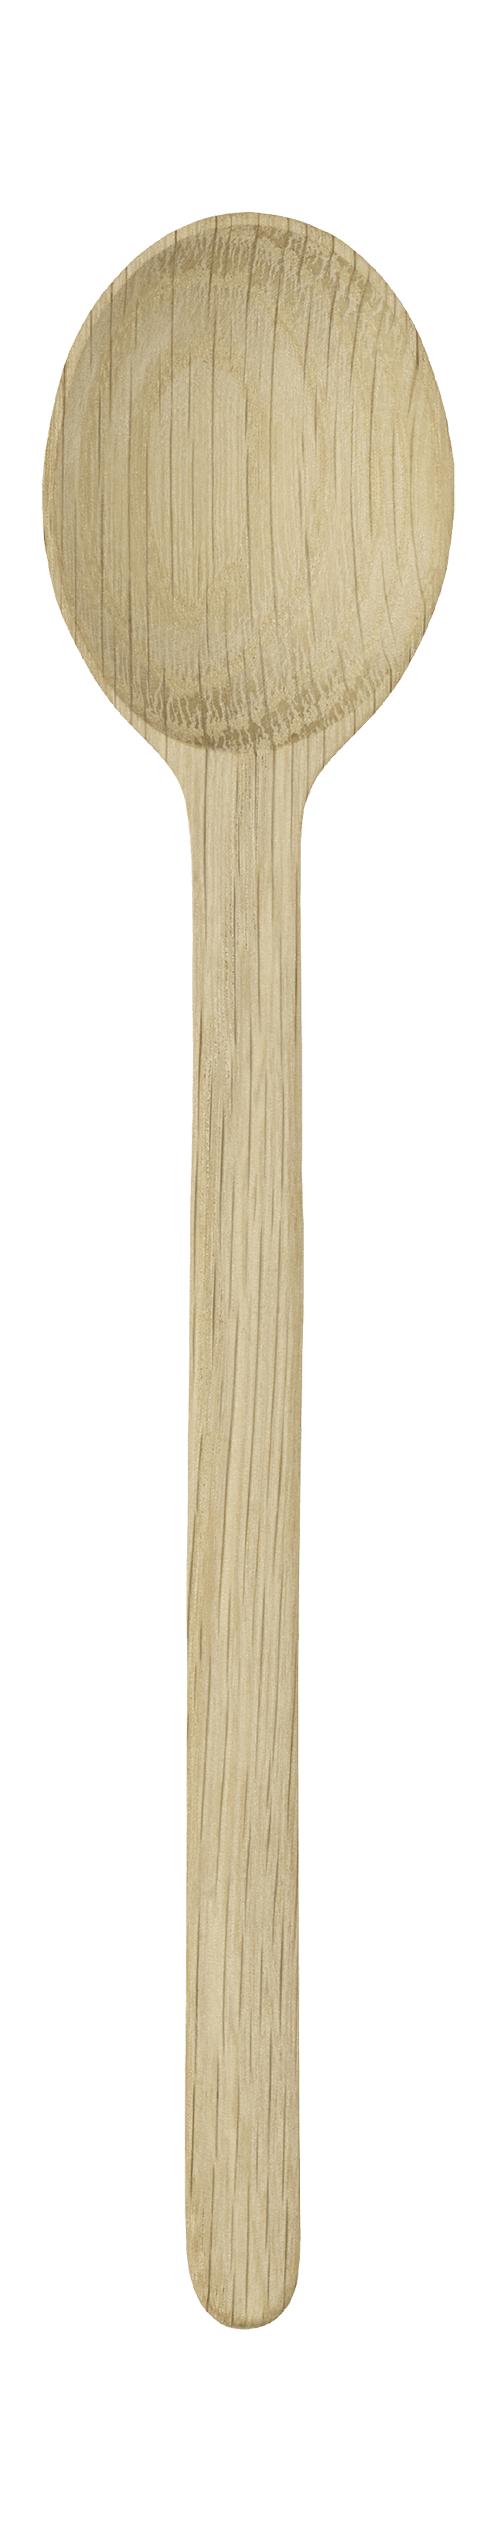 Rig Tig Forma de avena fácil cuchara de madera